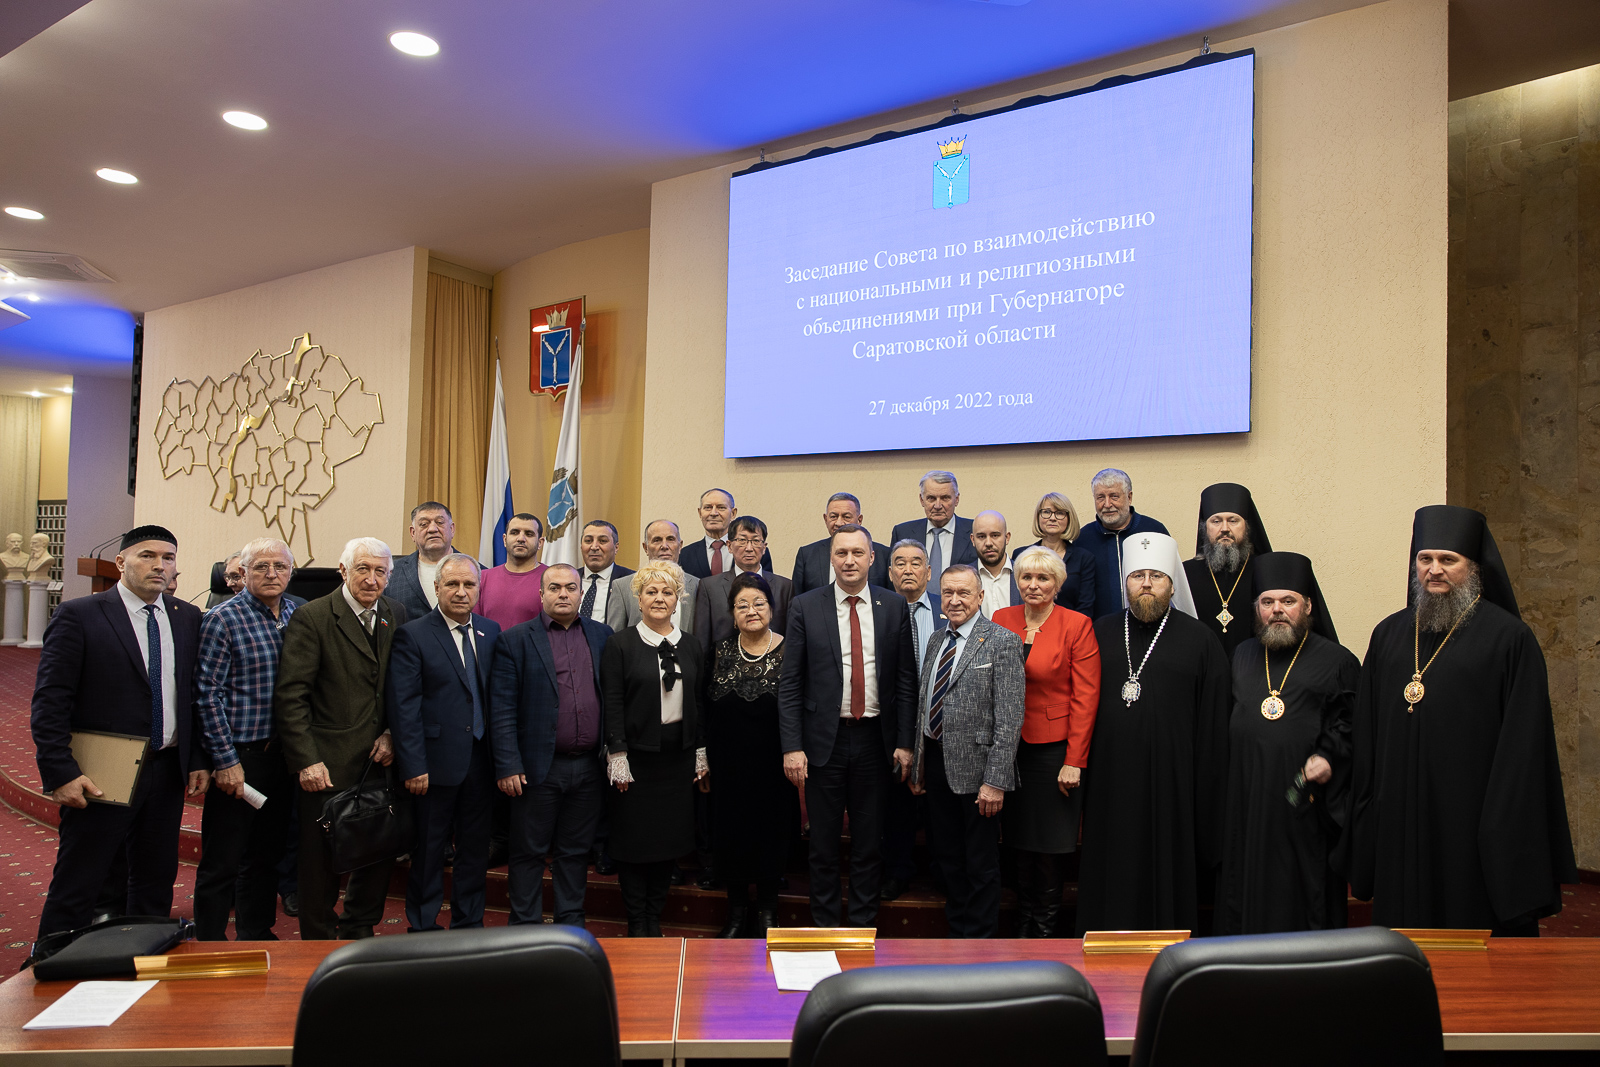 Прошло заседание Совета по взаимодействию с национальными и религиозными объединениями с участием архиереев Саратовской митрополии